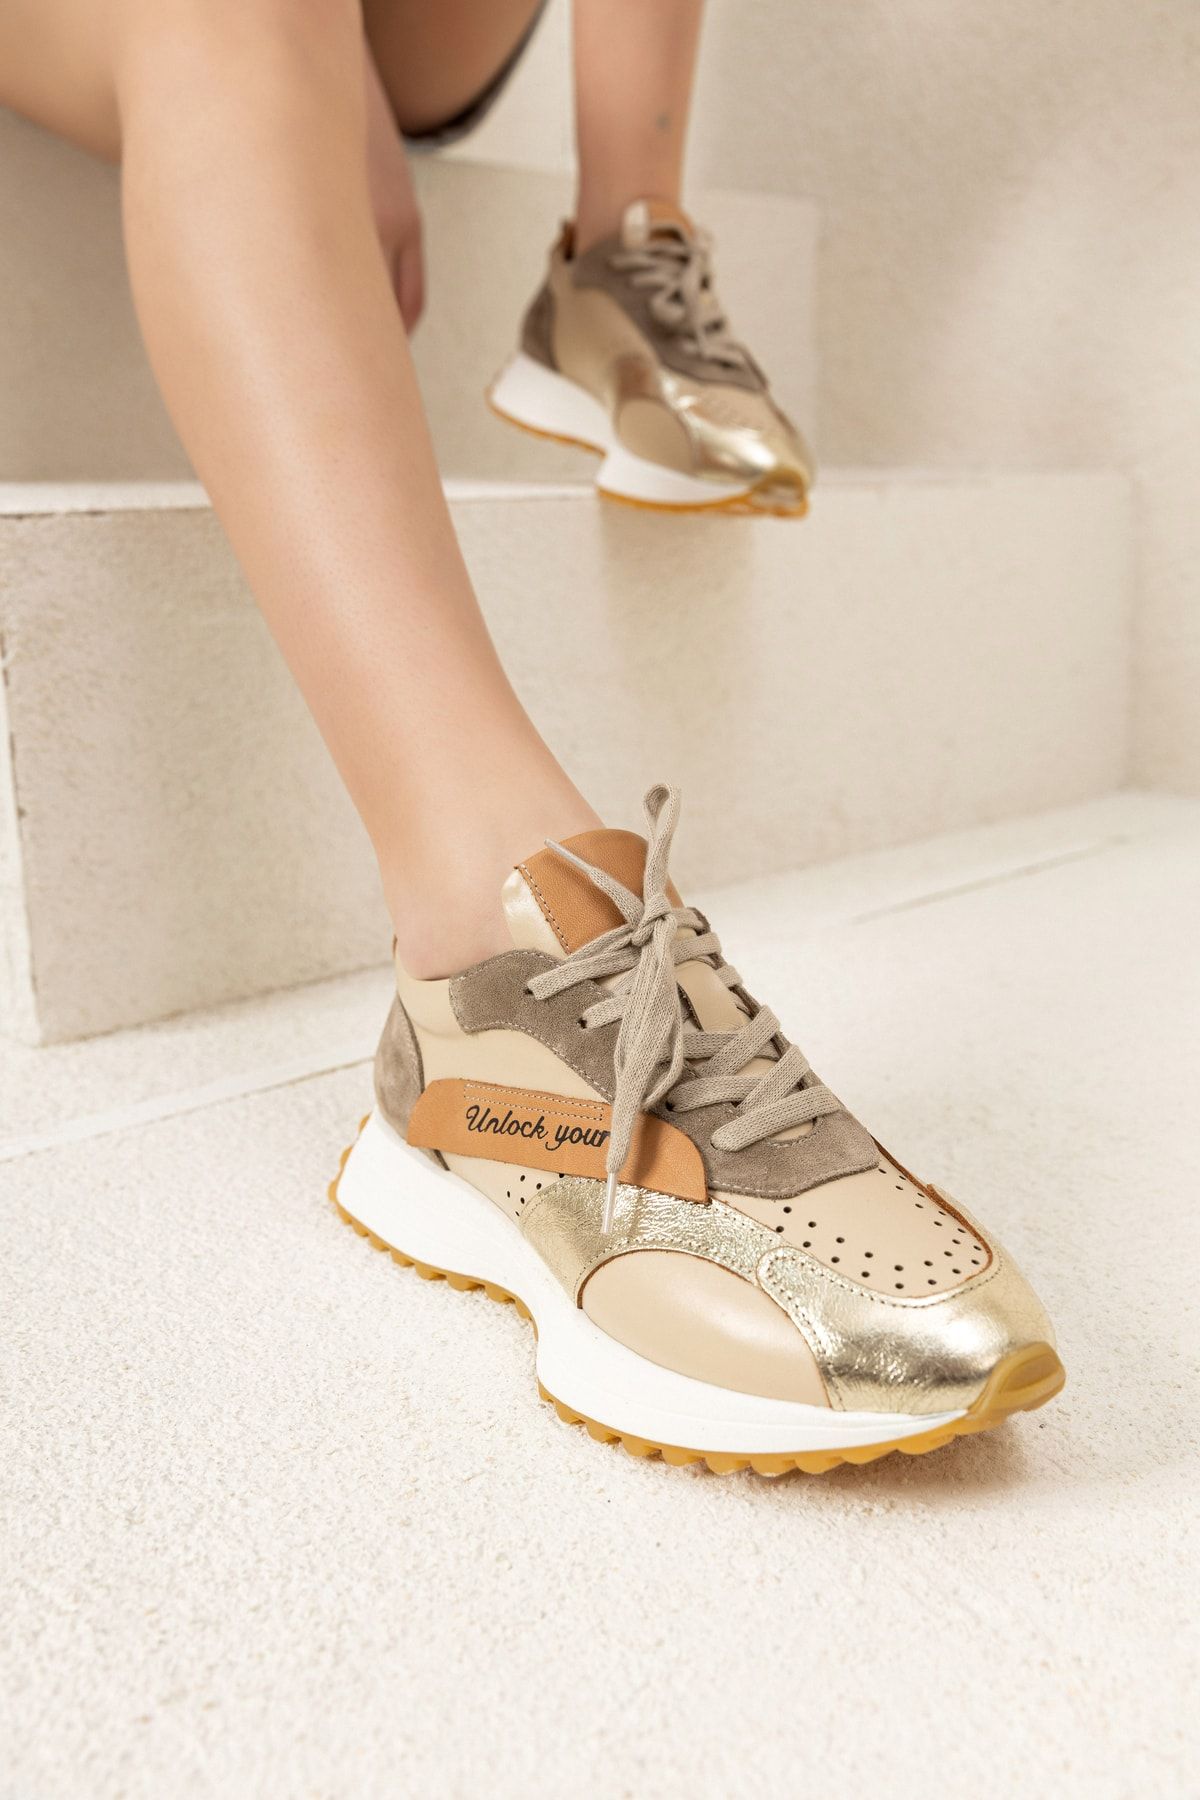 Tindirella Kadın Gold Günlük Rahat Spor Ayakkabı Sneaker Hakiki Deri Yürüyüş Koşu Ayakkabı 4cm Ortapedik